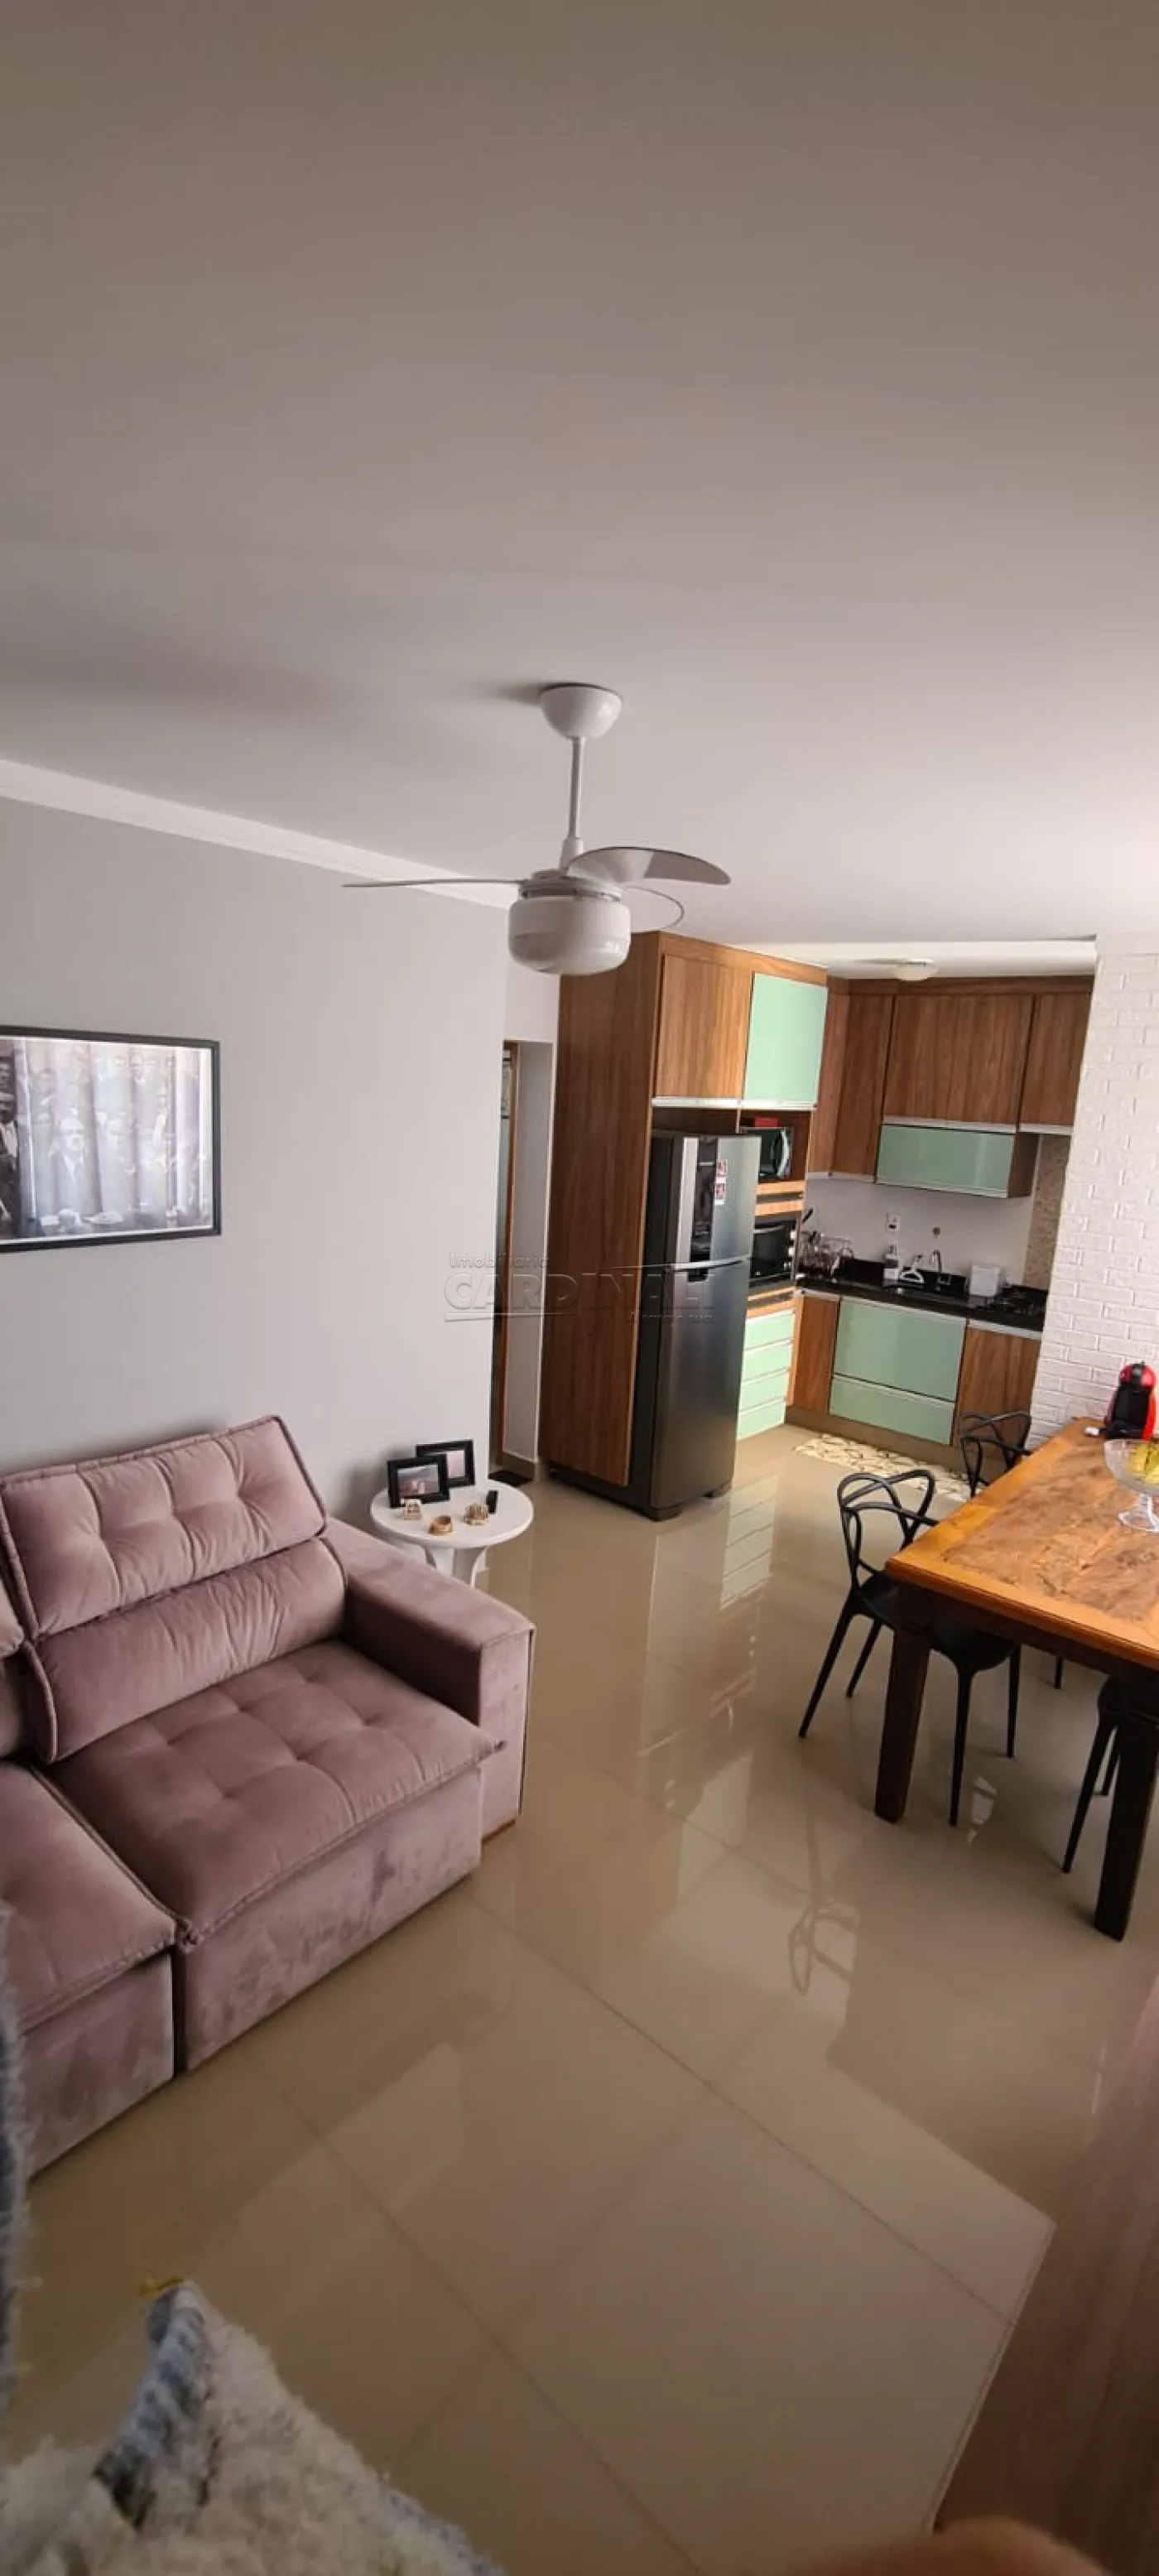 Apartamento / Padrão em São Carlos , Comprar por R$272.000,00